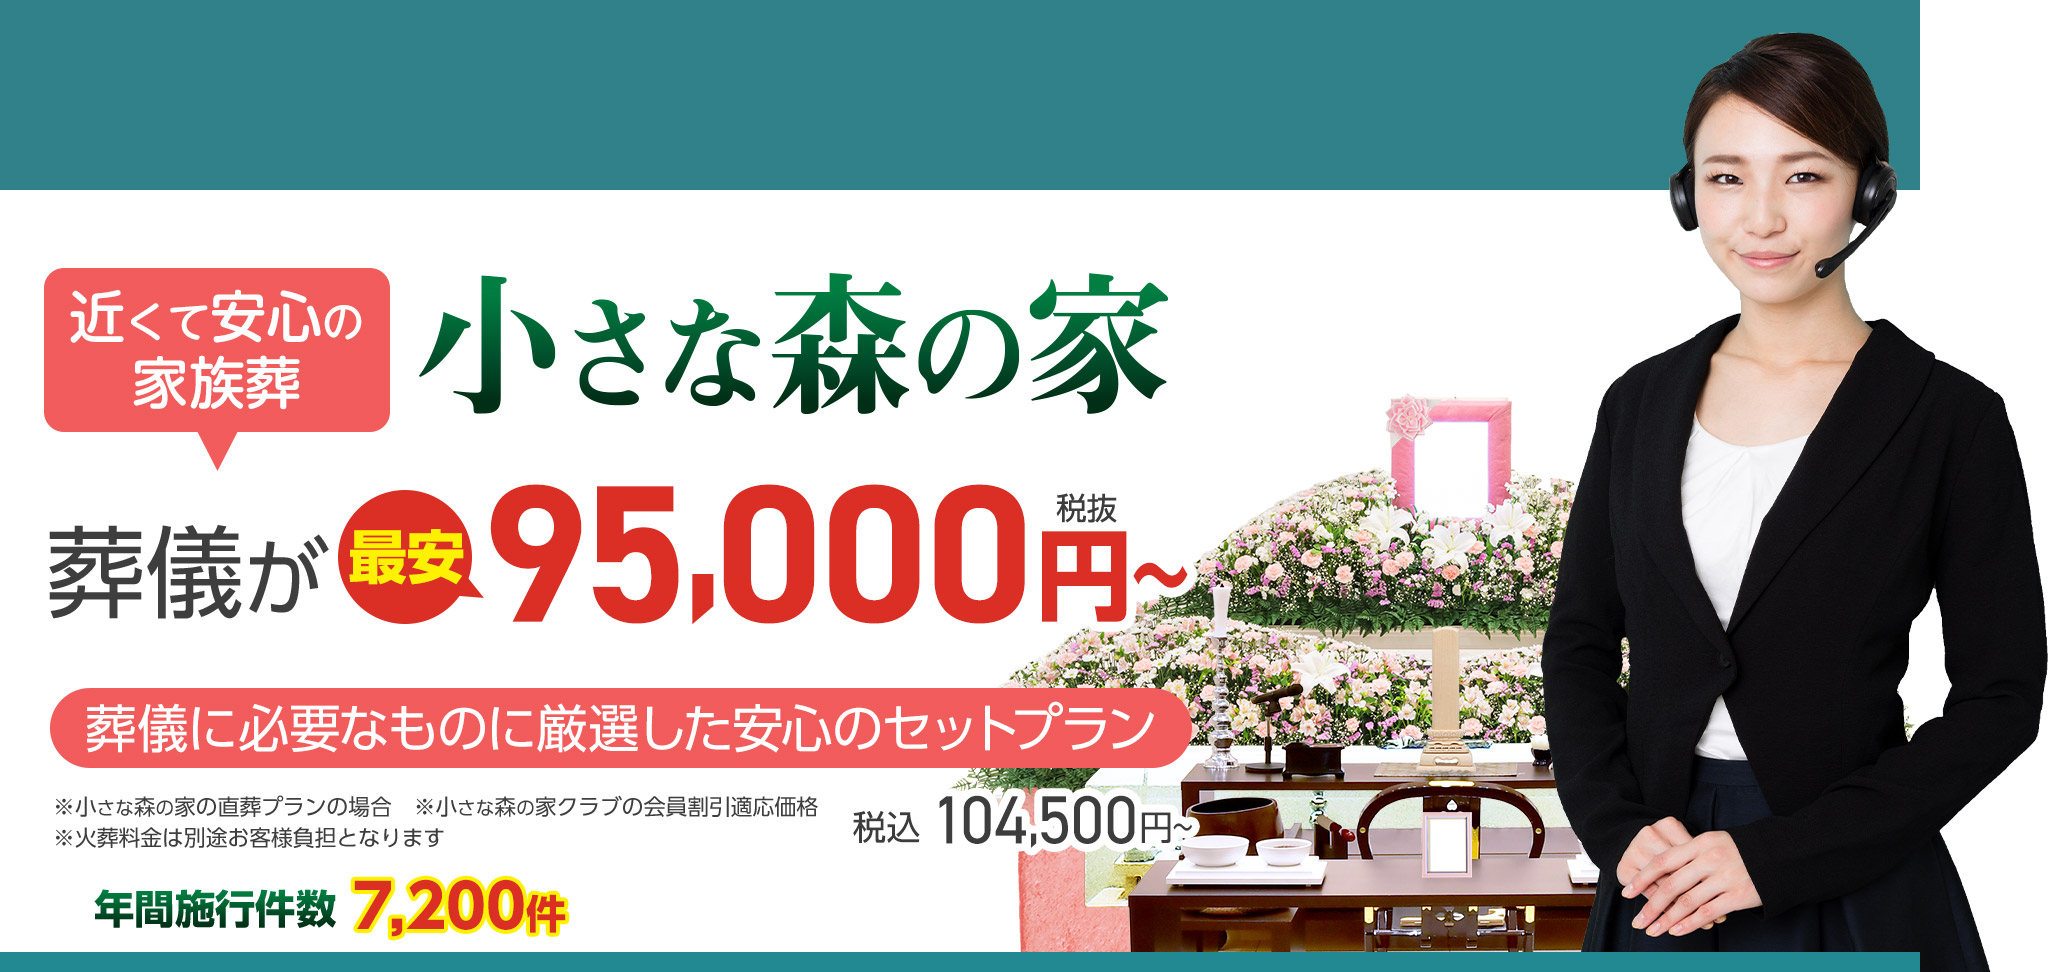 鎌ヶ谷市で家族葬をお探しなら小さな森の家 近くて安心の家族葬 葬儀が税抜150,000円